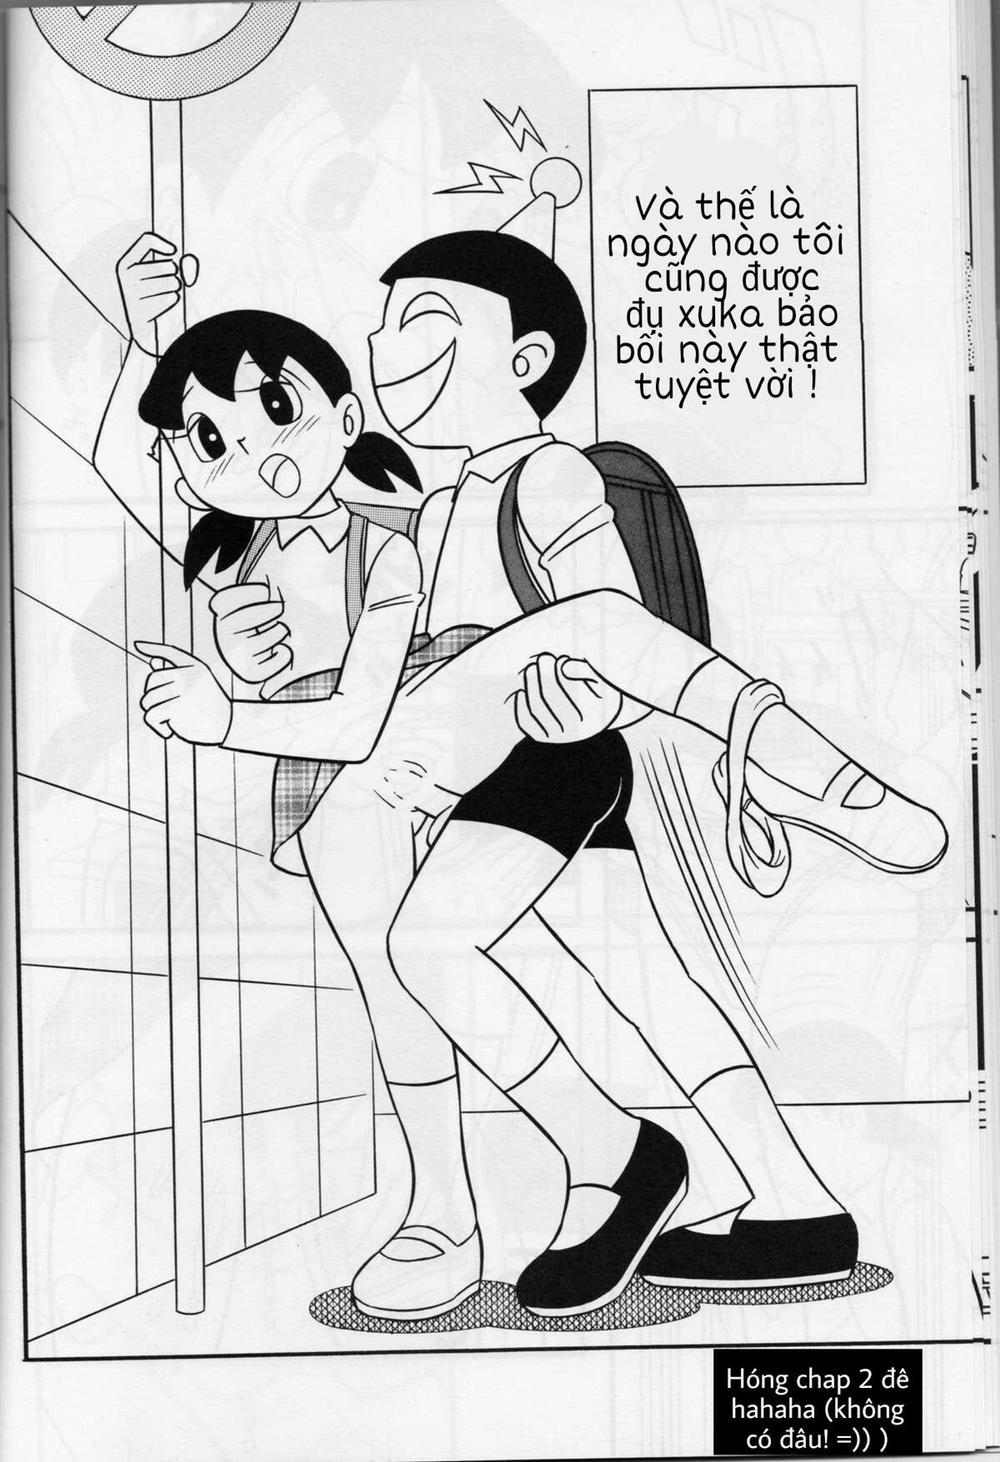 Tuyển Tập Doraemon Doujinshi 18+ Chương 1 M u c a t t c Trang 15